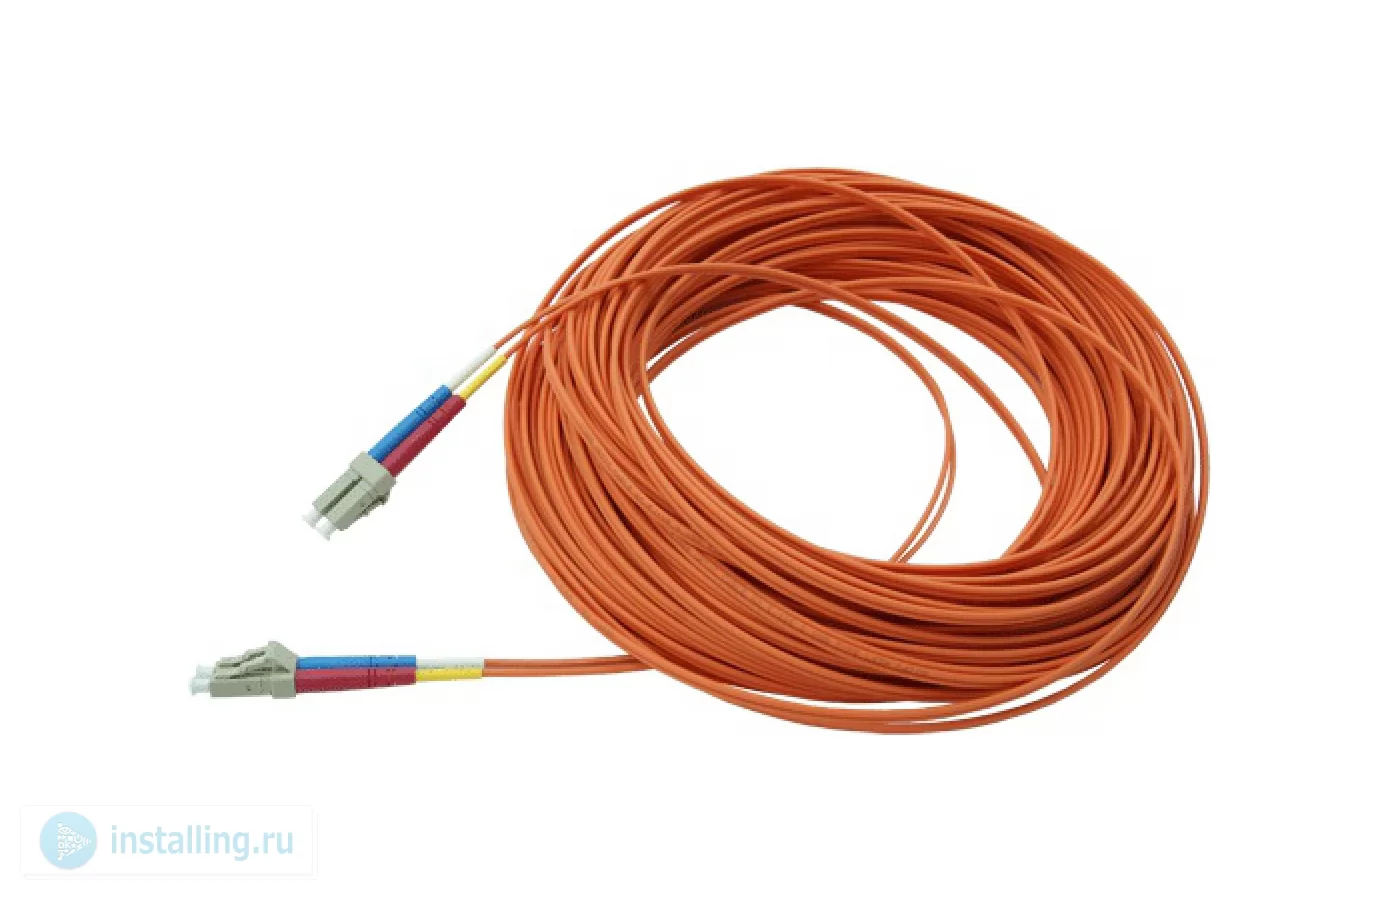 Купить Оптоволоконный кабель Opticis LLMD-625-10 самовывозом в Москве или  доставкой по России.